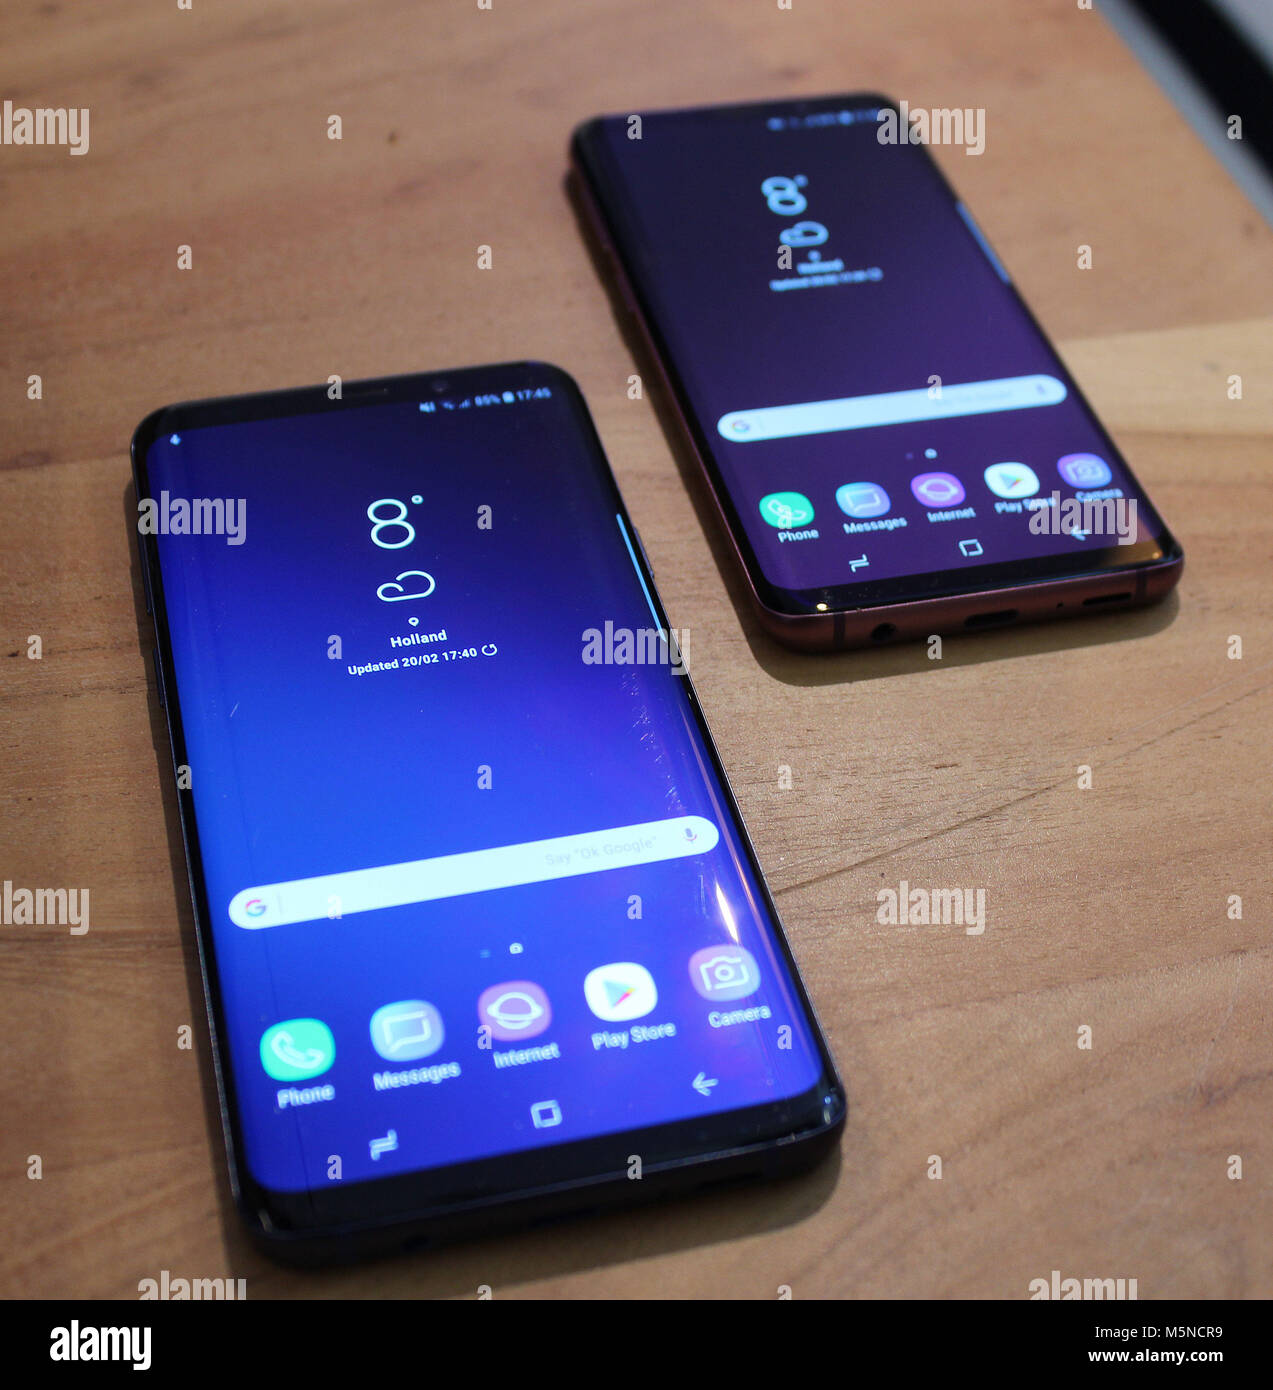 Ein Blick auf die neuen Samsung Galaxy S9 und S9+ (links) Smartphones, vorgestellt von Samsung auf dem iPhone X, mit hoher Spezifikation Kameras und Gesicht komplett-Scanning Technology personalisierte Emoji zu erstellen. Stockfoto